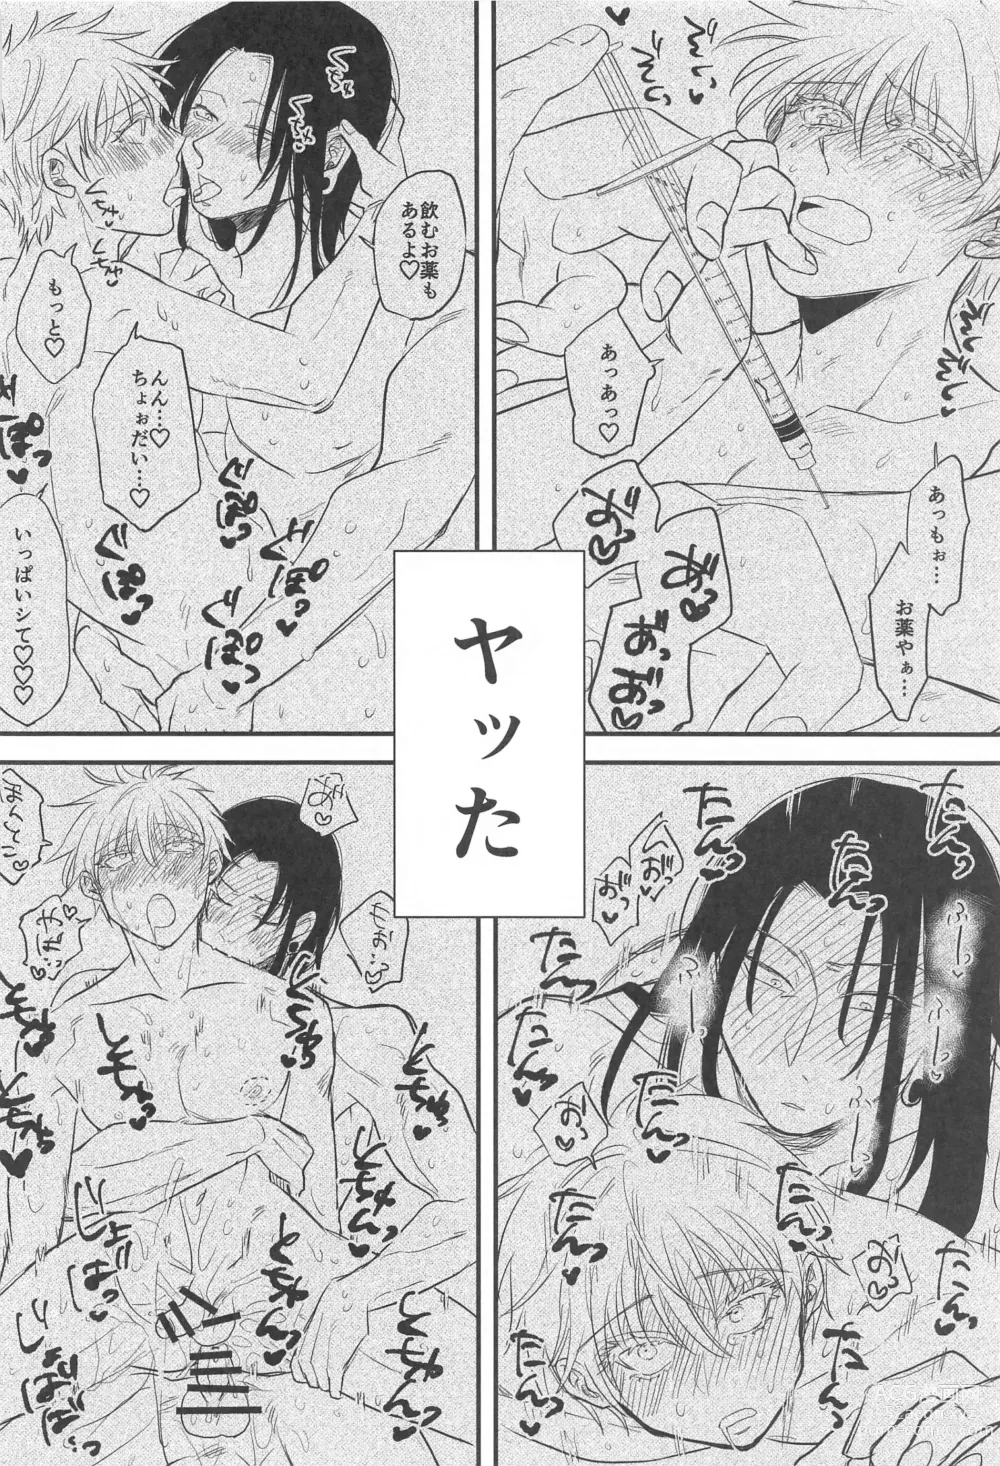 Page 51 of doujinshi Saikyou  x Kimeseku  x Sokuochi 2-koma